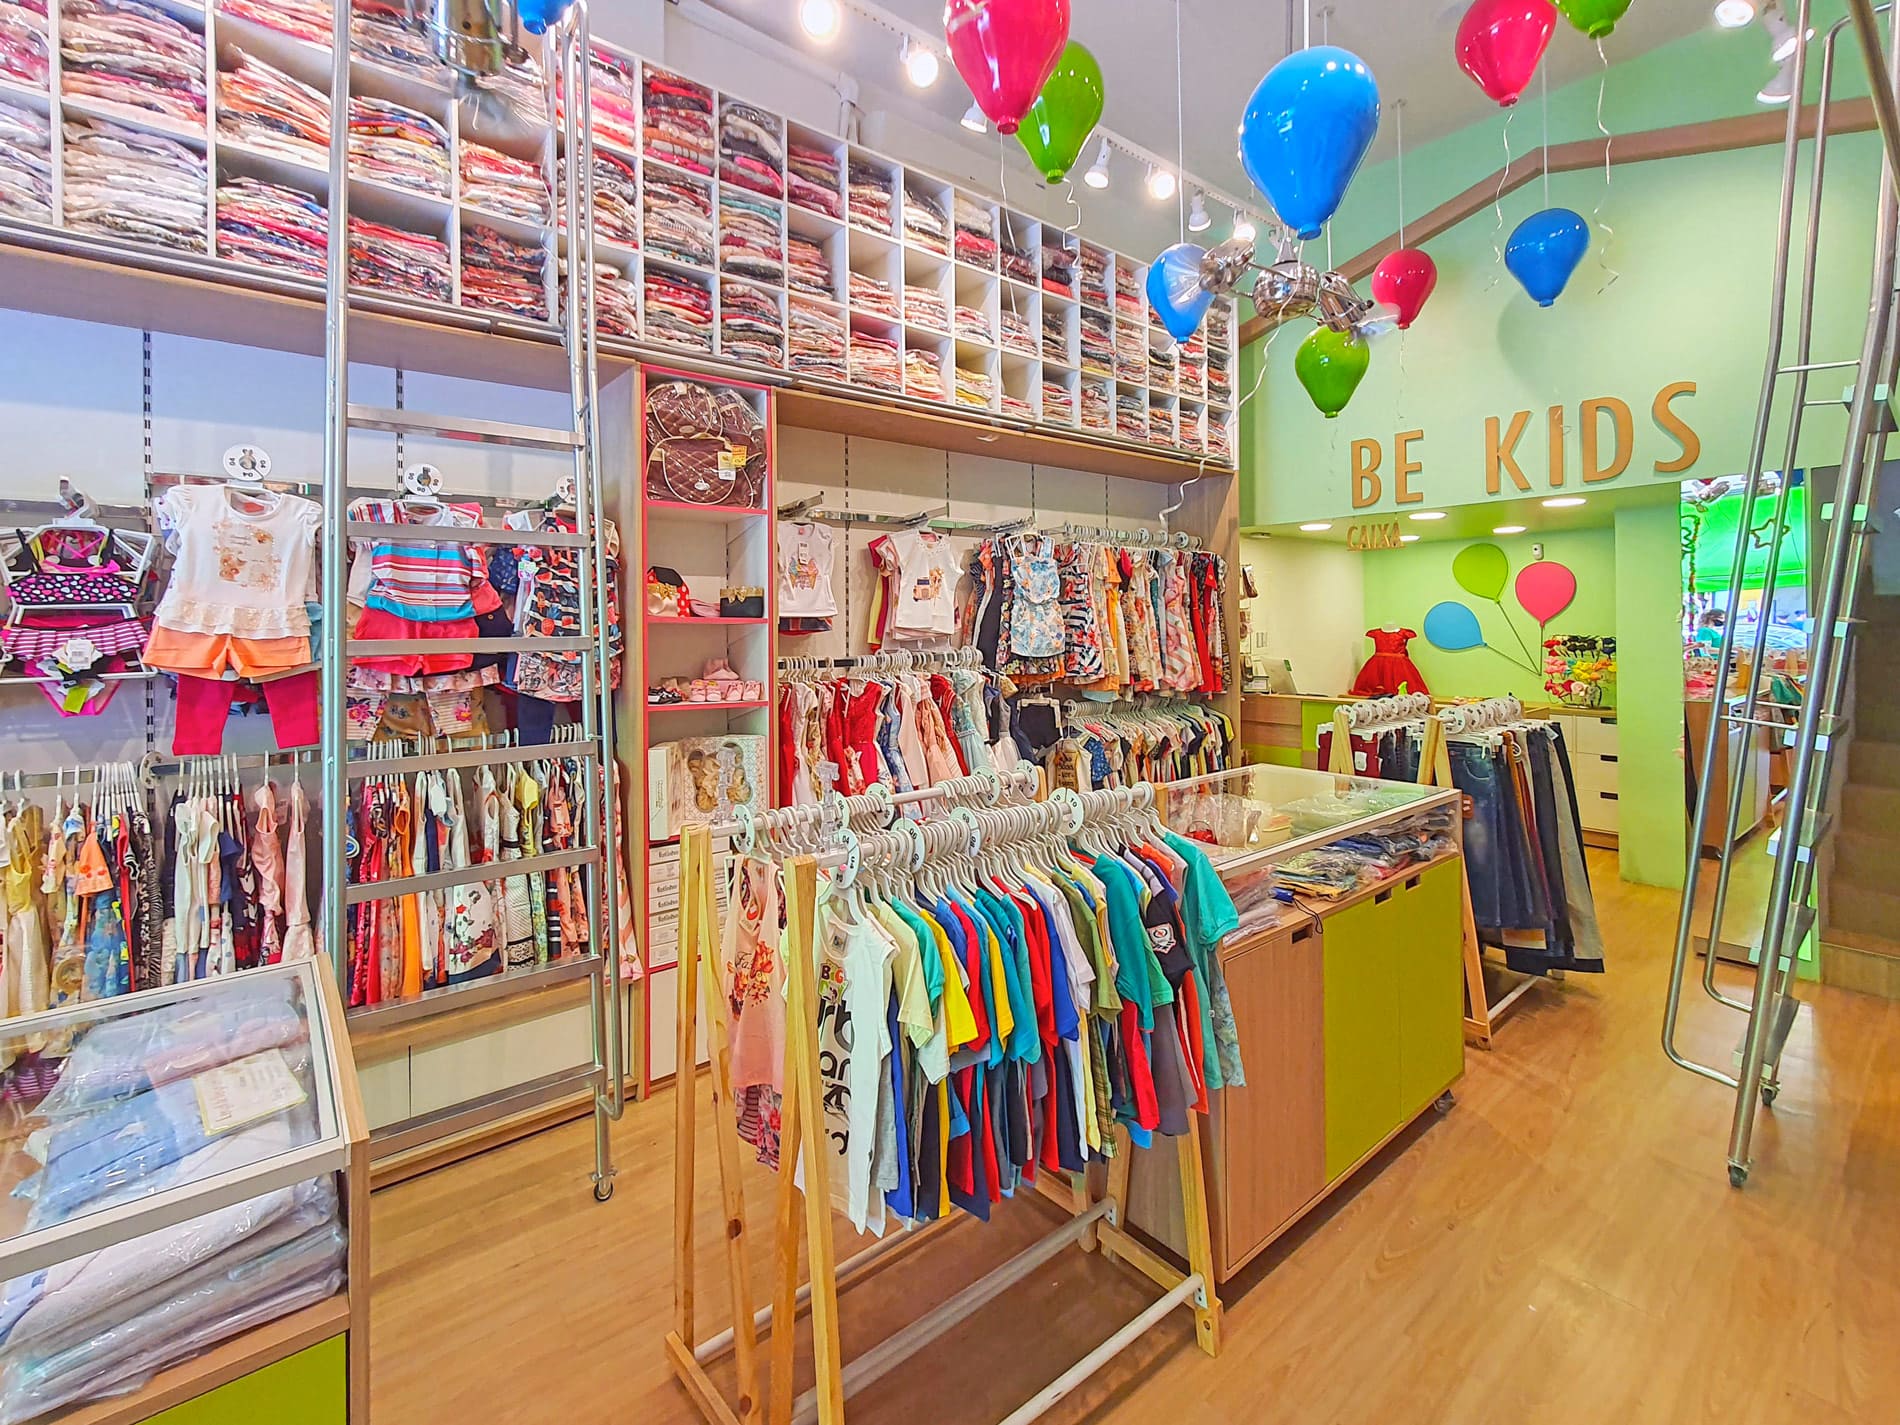 Arquitetura de interior para loja de roupas e acessórios bebê e infantil, Be Kids.